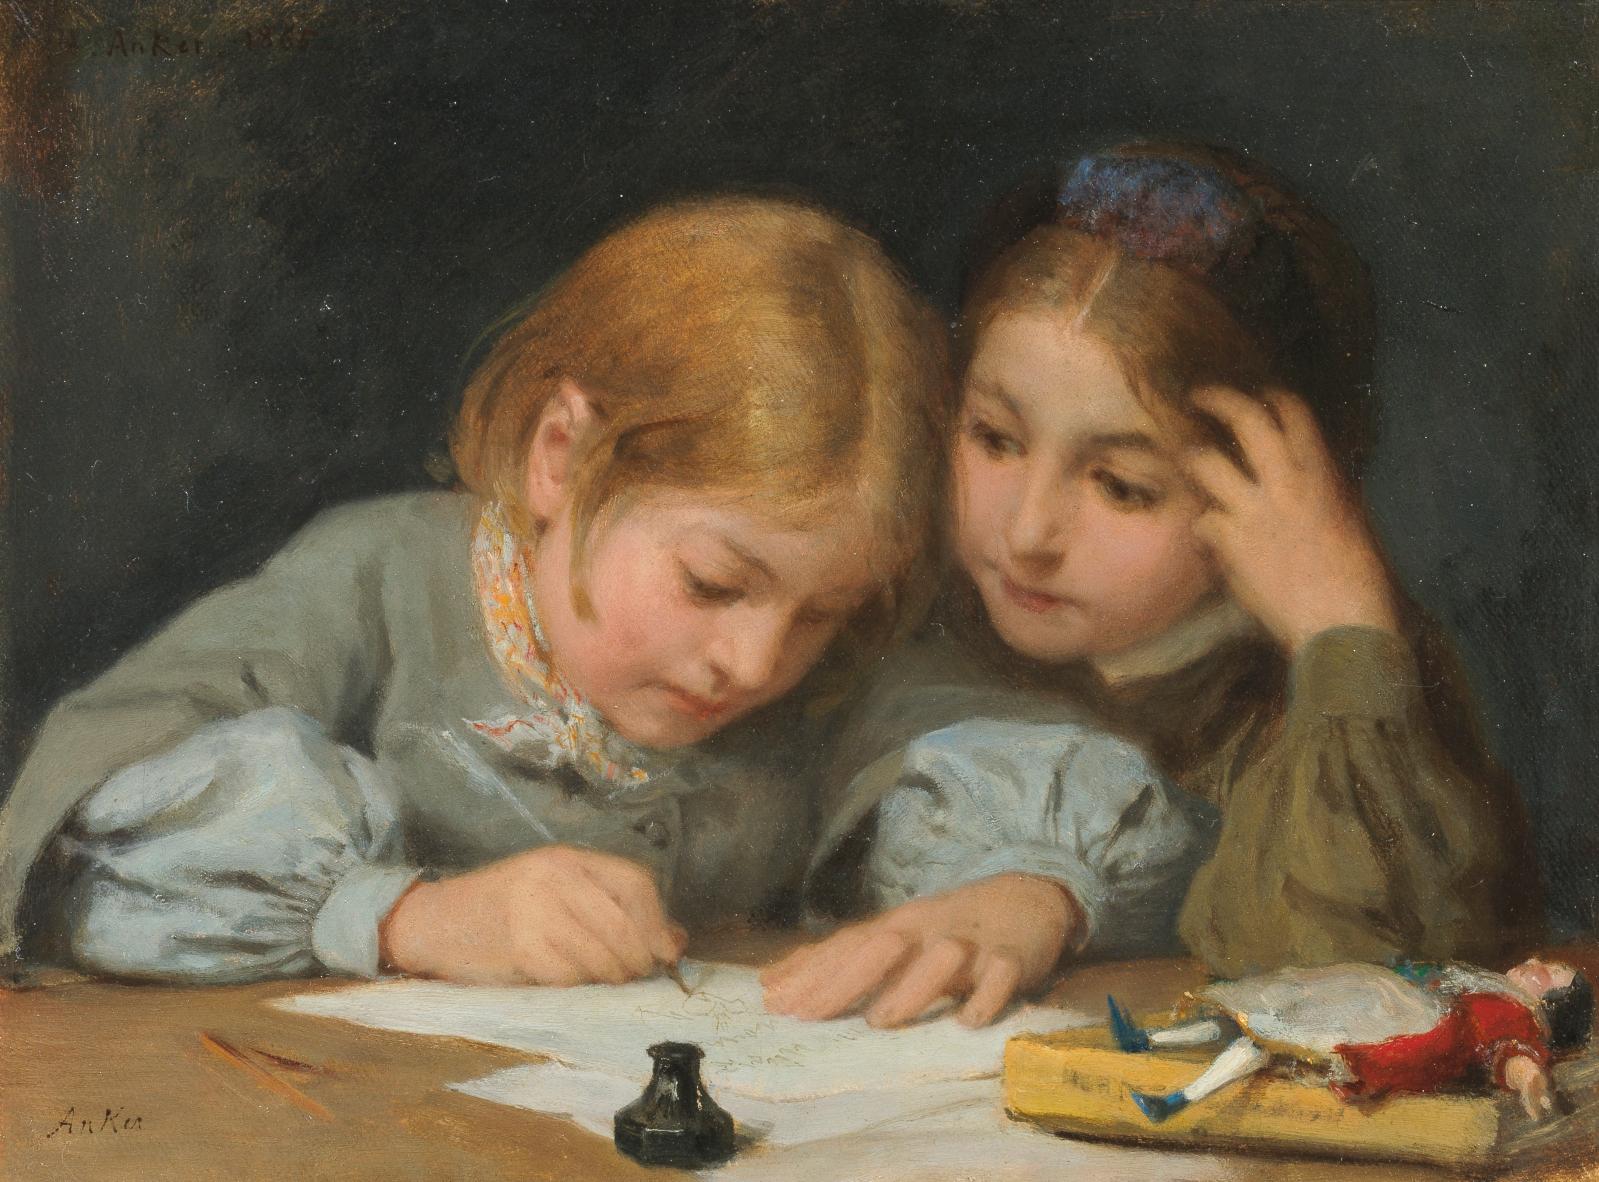 Les collectionneurs suisses sont friands des huiles d’Albert Anker (1831-1910), considéré comme le peintre national par excellence, et not